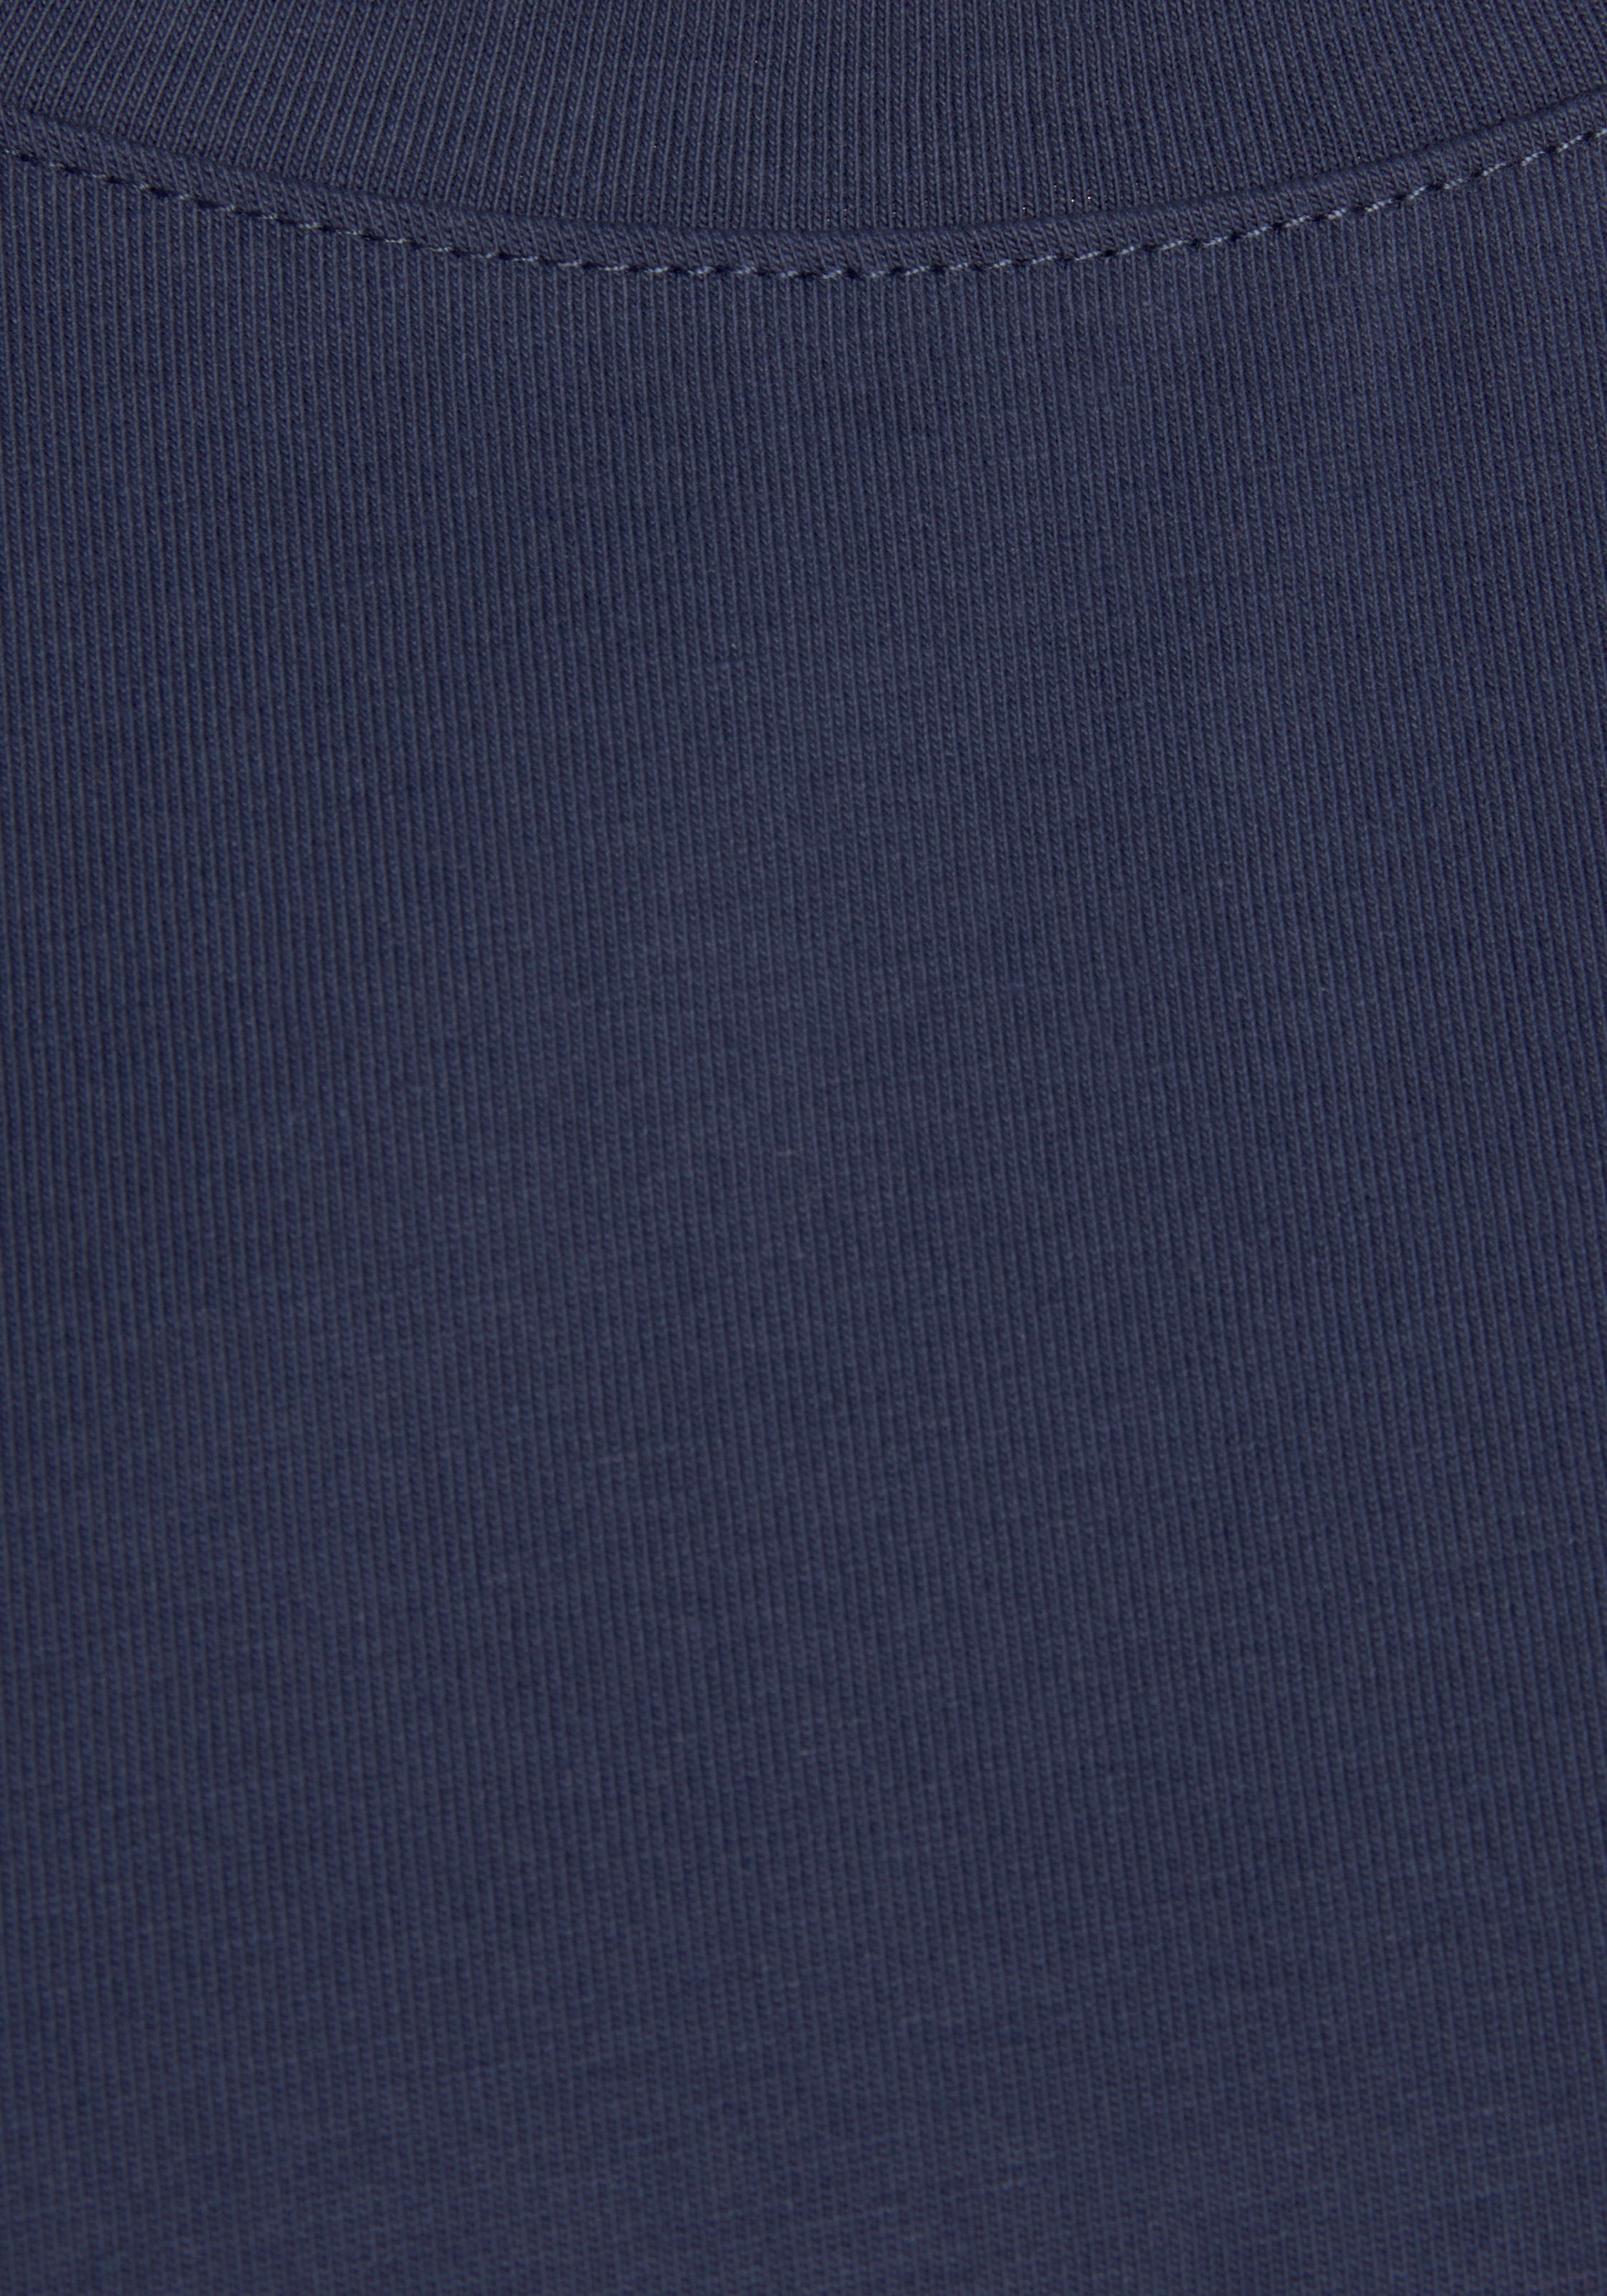 H.I.S T-Shirt mit Ärmelaufschlag navy Stil, maritimen im Loungewear